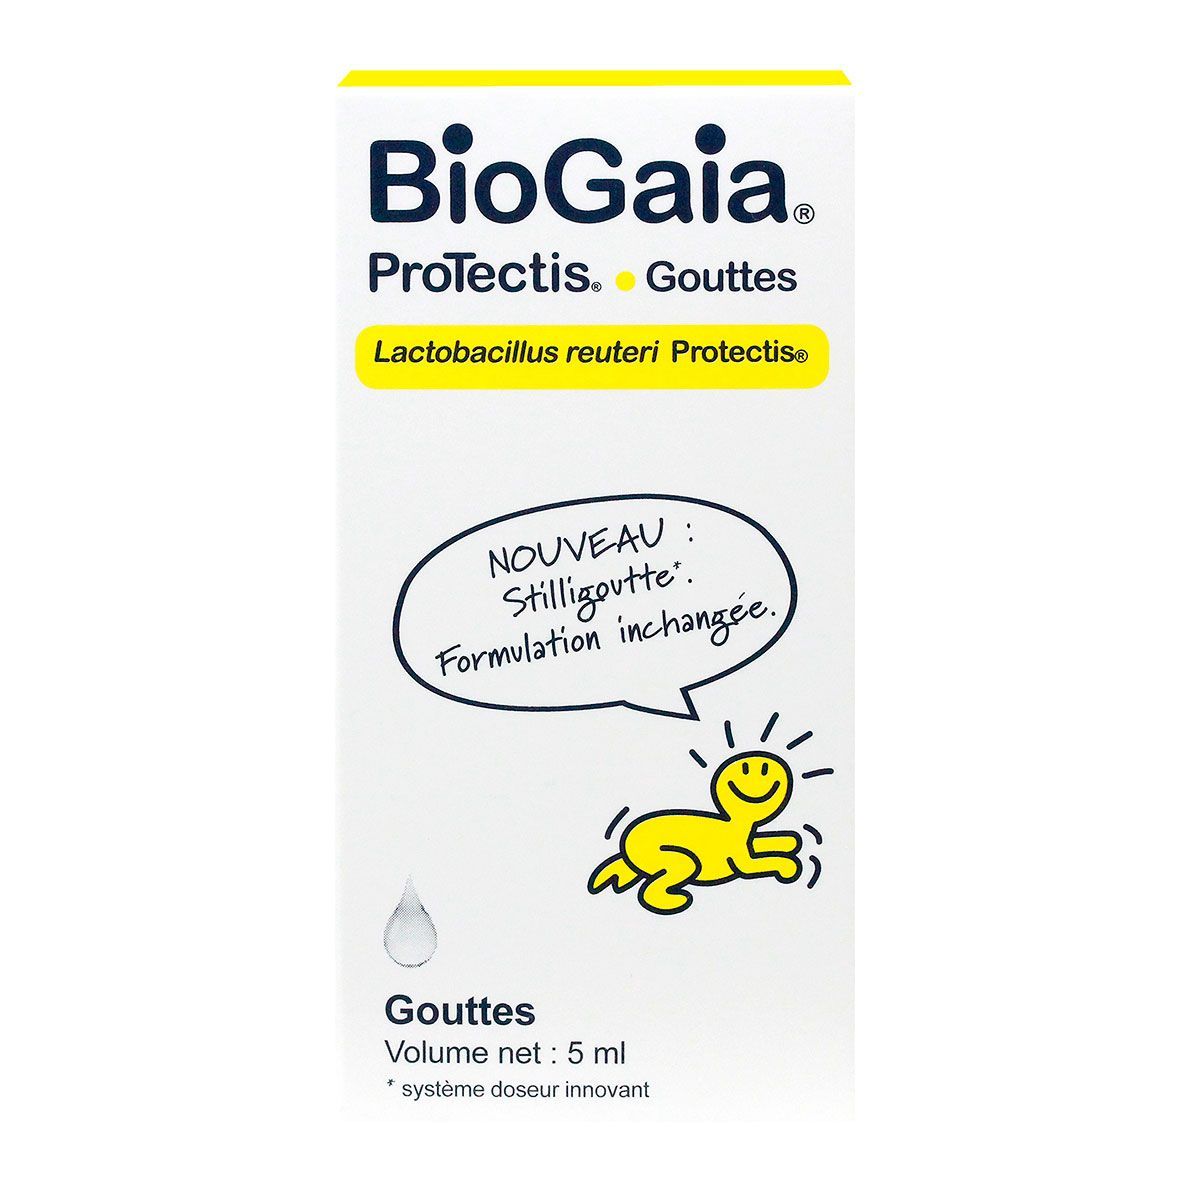 BioGaia et gammes BioGaia - Paraphamadirect